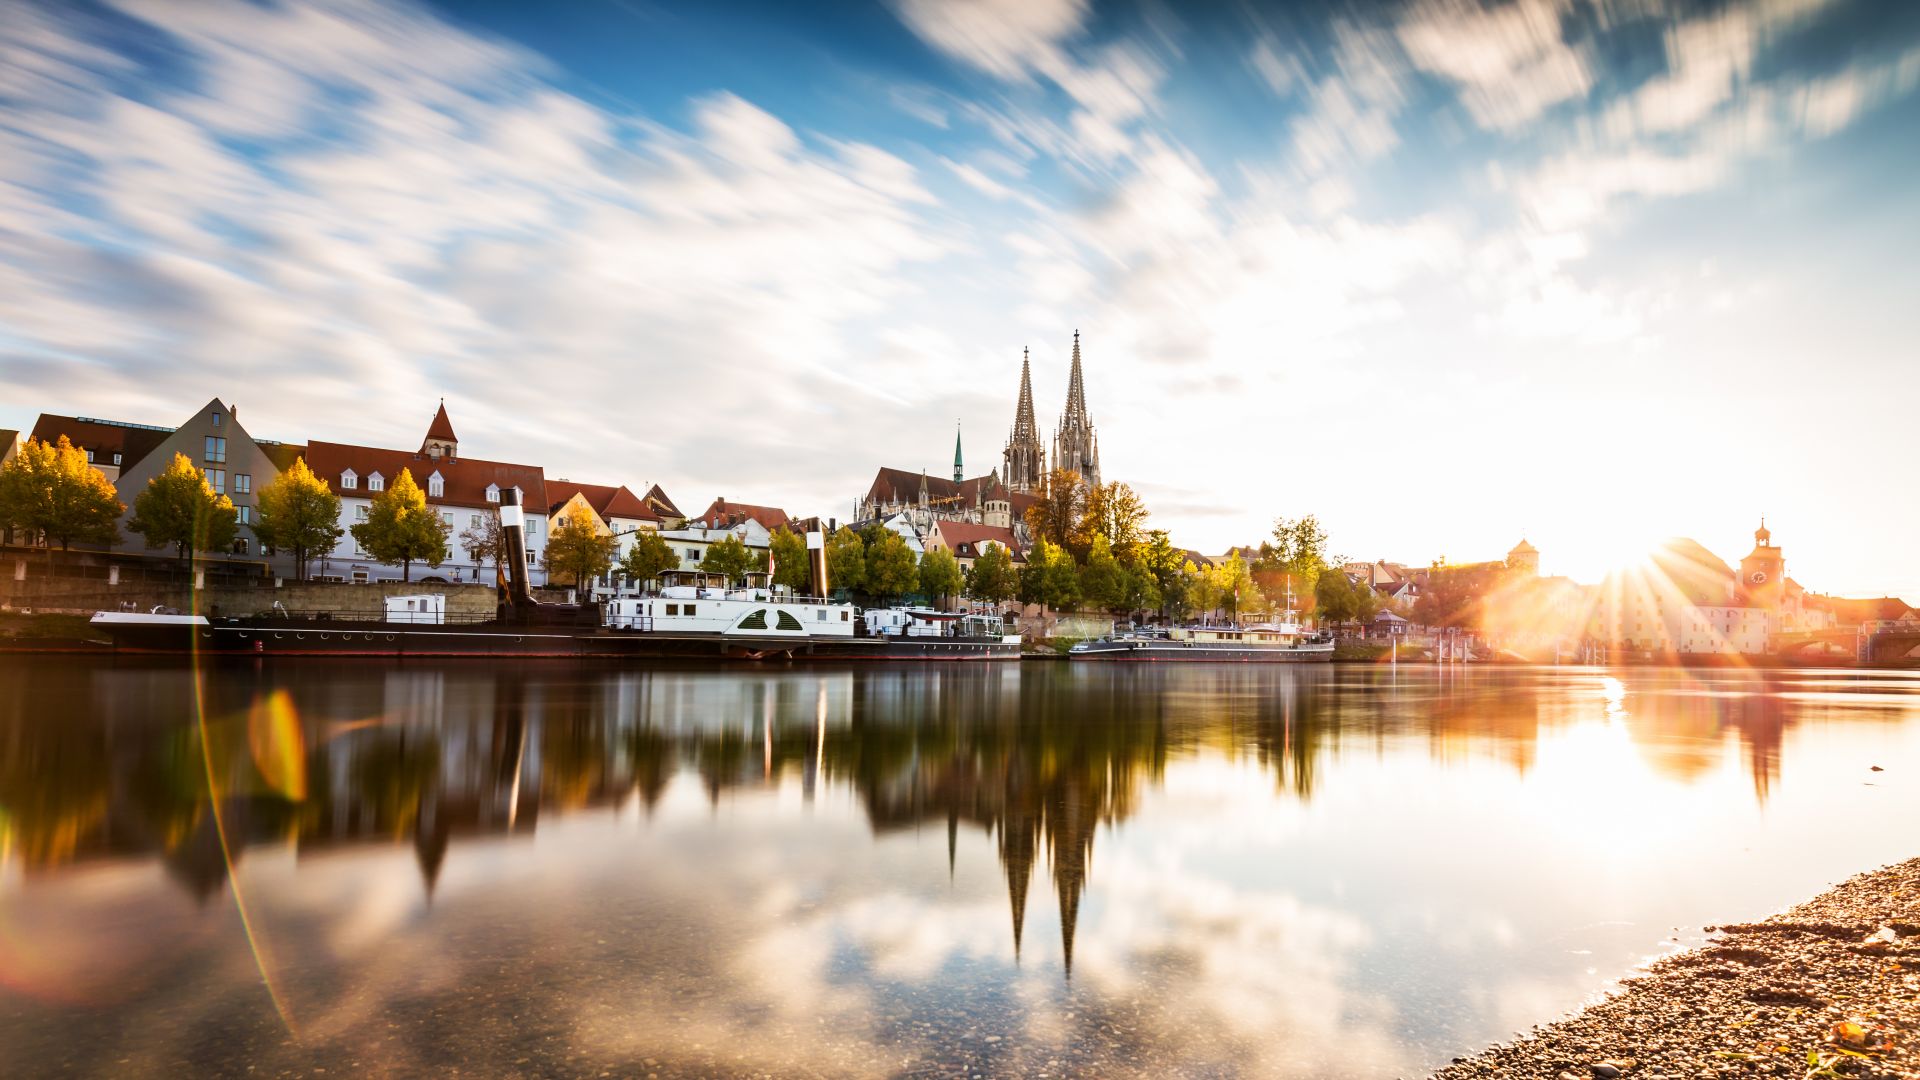 Regensburg: Donau und Skyline im Sonnenuntergang